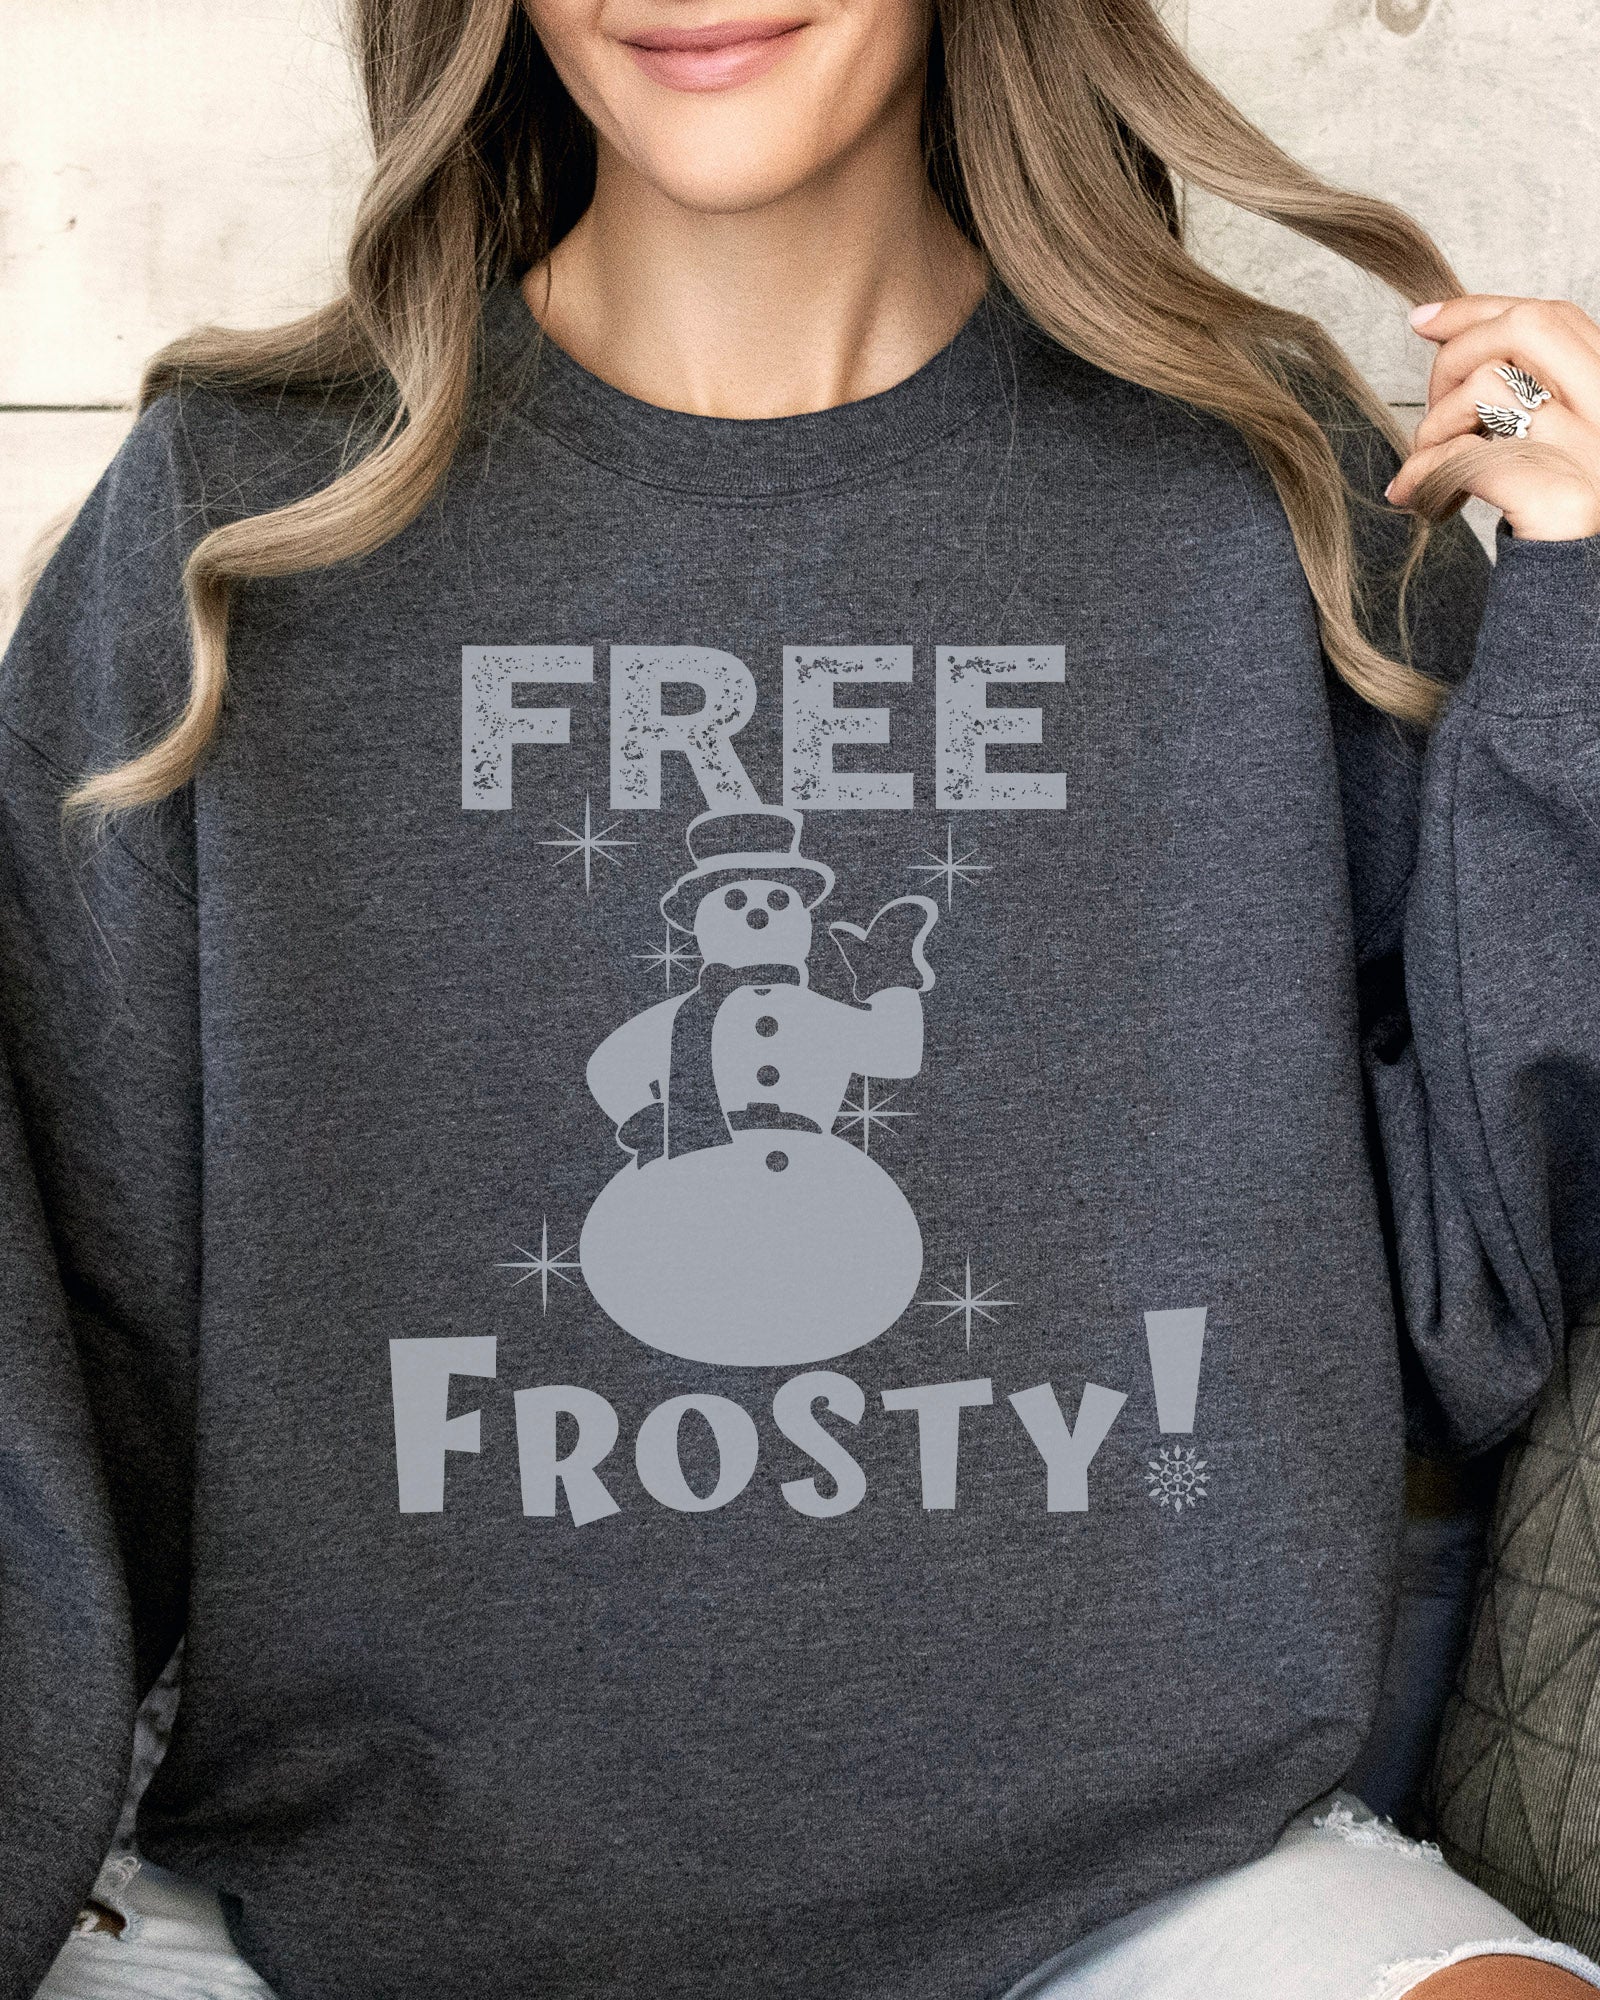 Kranks - Frosty Sweatshirt